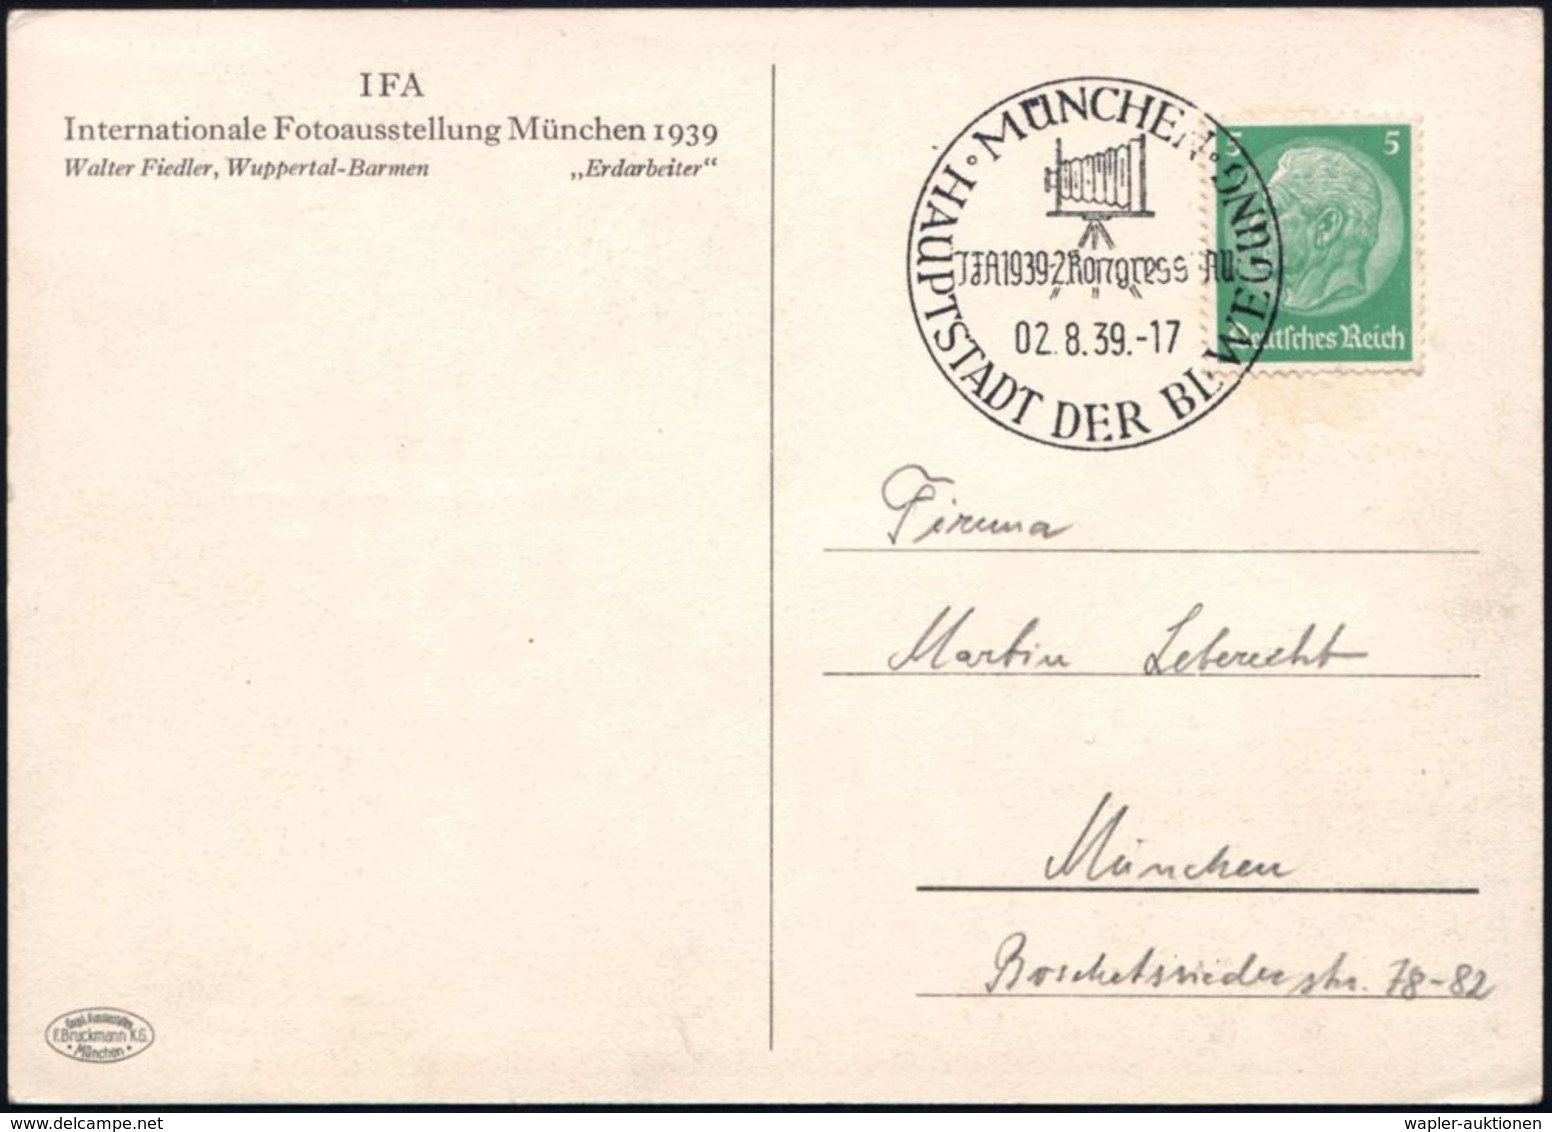 MÜNCHEN/ JFA 1939-Kongress JAU/ HDB 1939 (2.8.) SSt = Balgen-Kamera (auf Stativ) Auf S/w.-Sonder-Kt.: IFA/ Inter-nationa - Fotografia